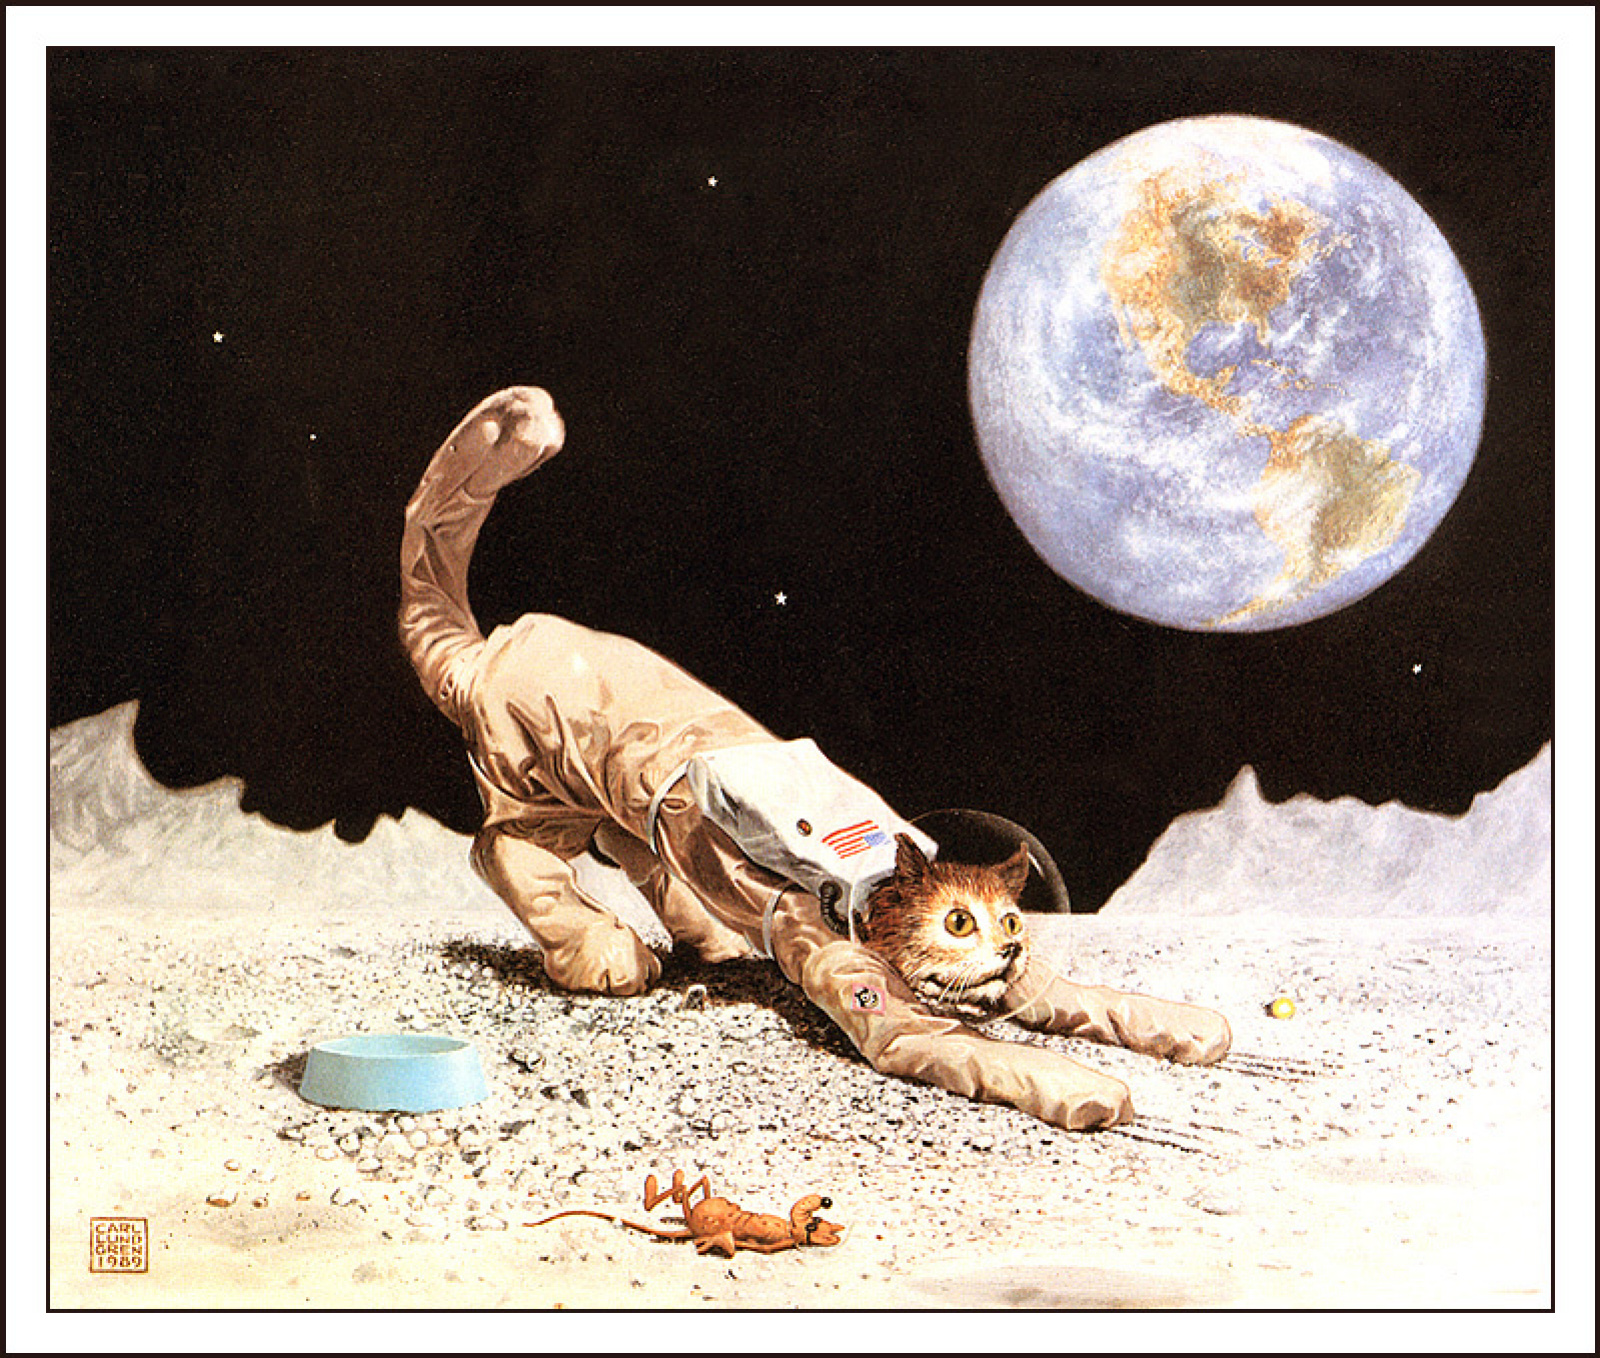 Картины Соколова о космосе